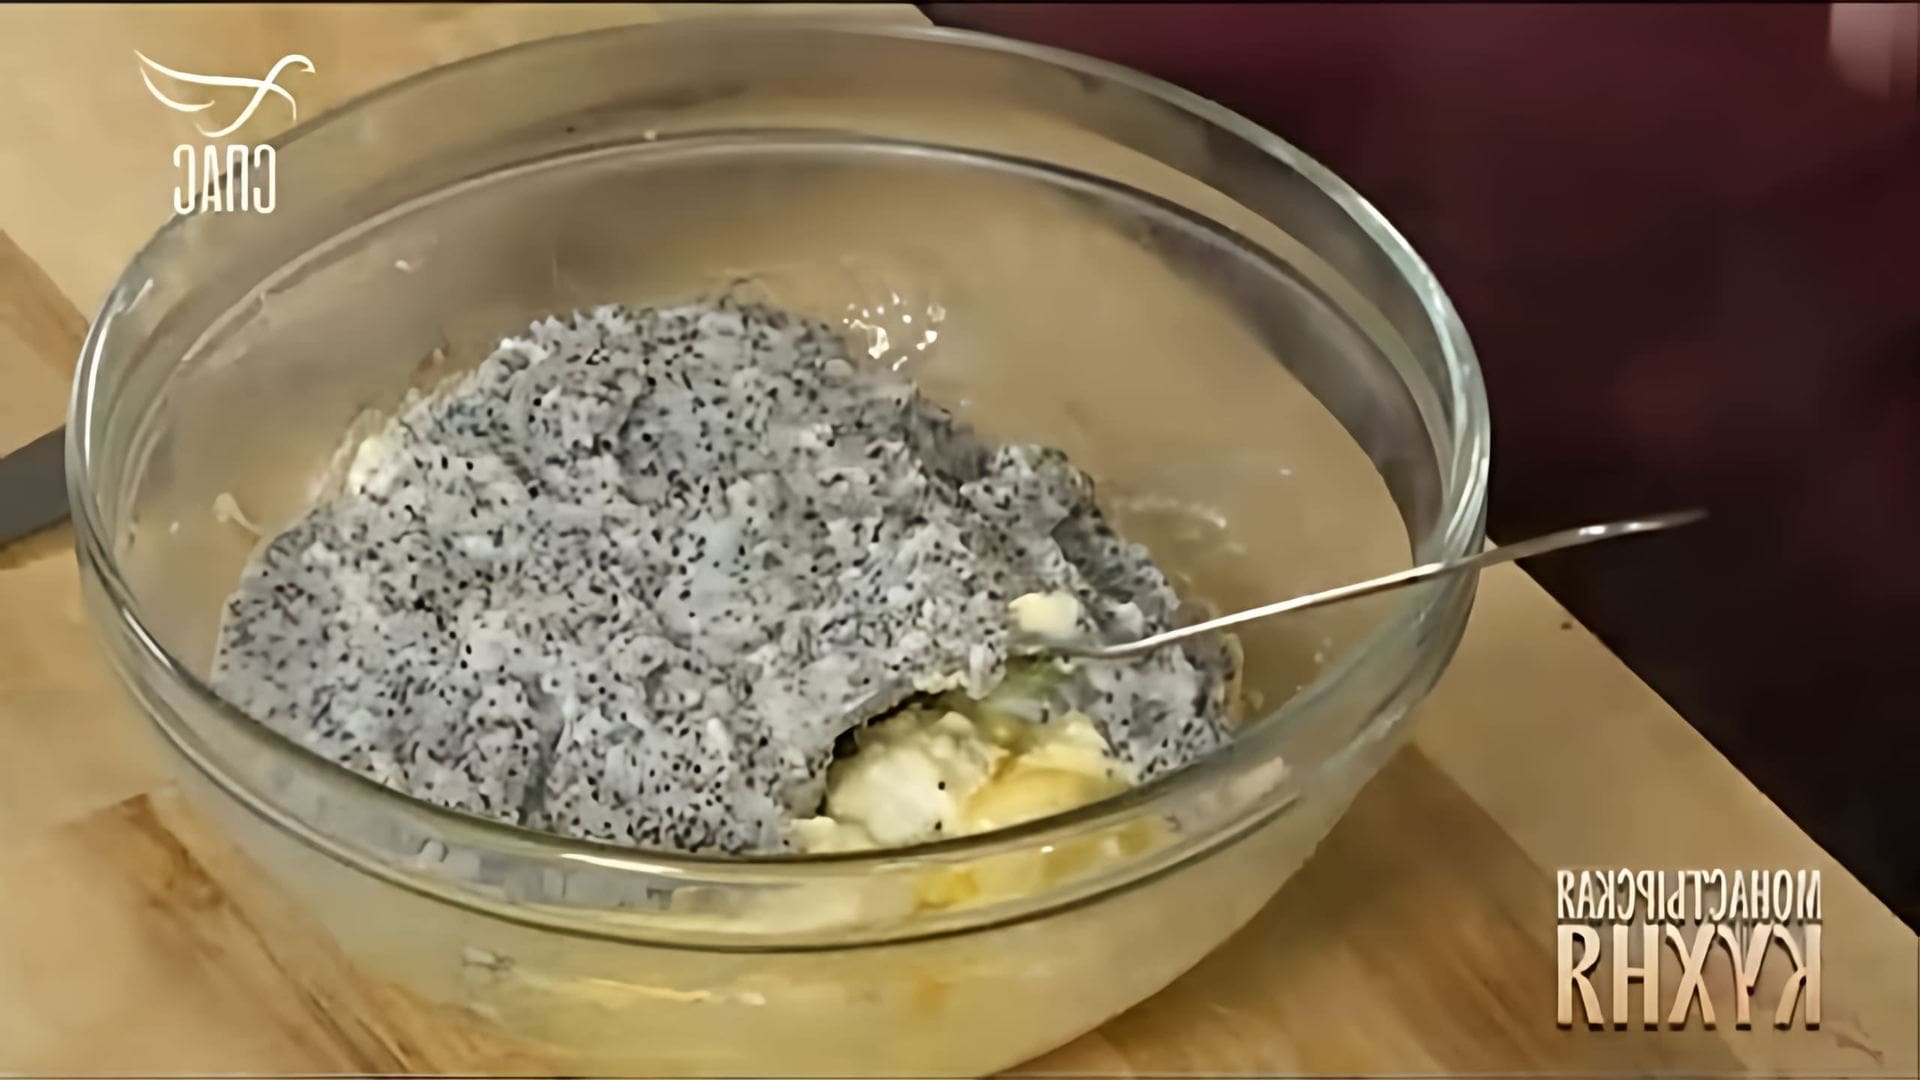 В этом видео Максим Сырников готовит два блюда: похлебку из сельдерея и творожный пирог с маковой начинкой